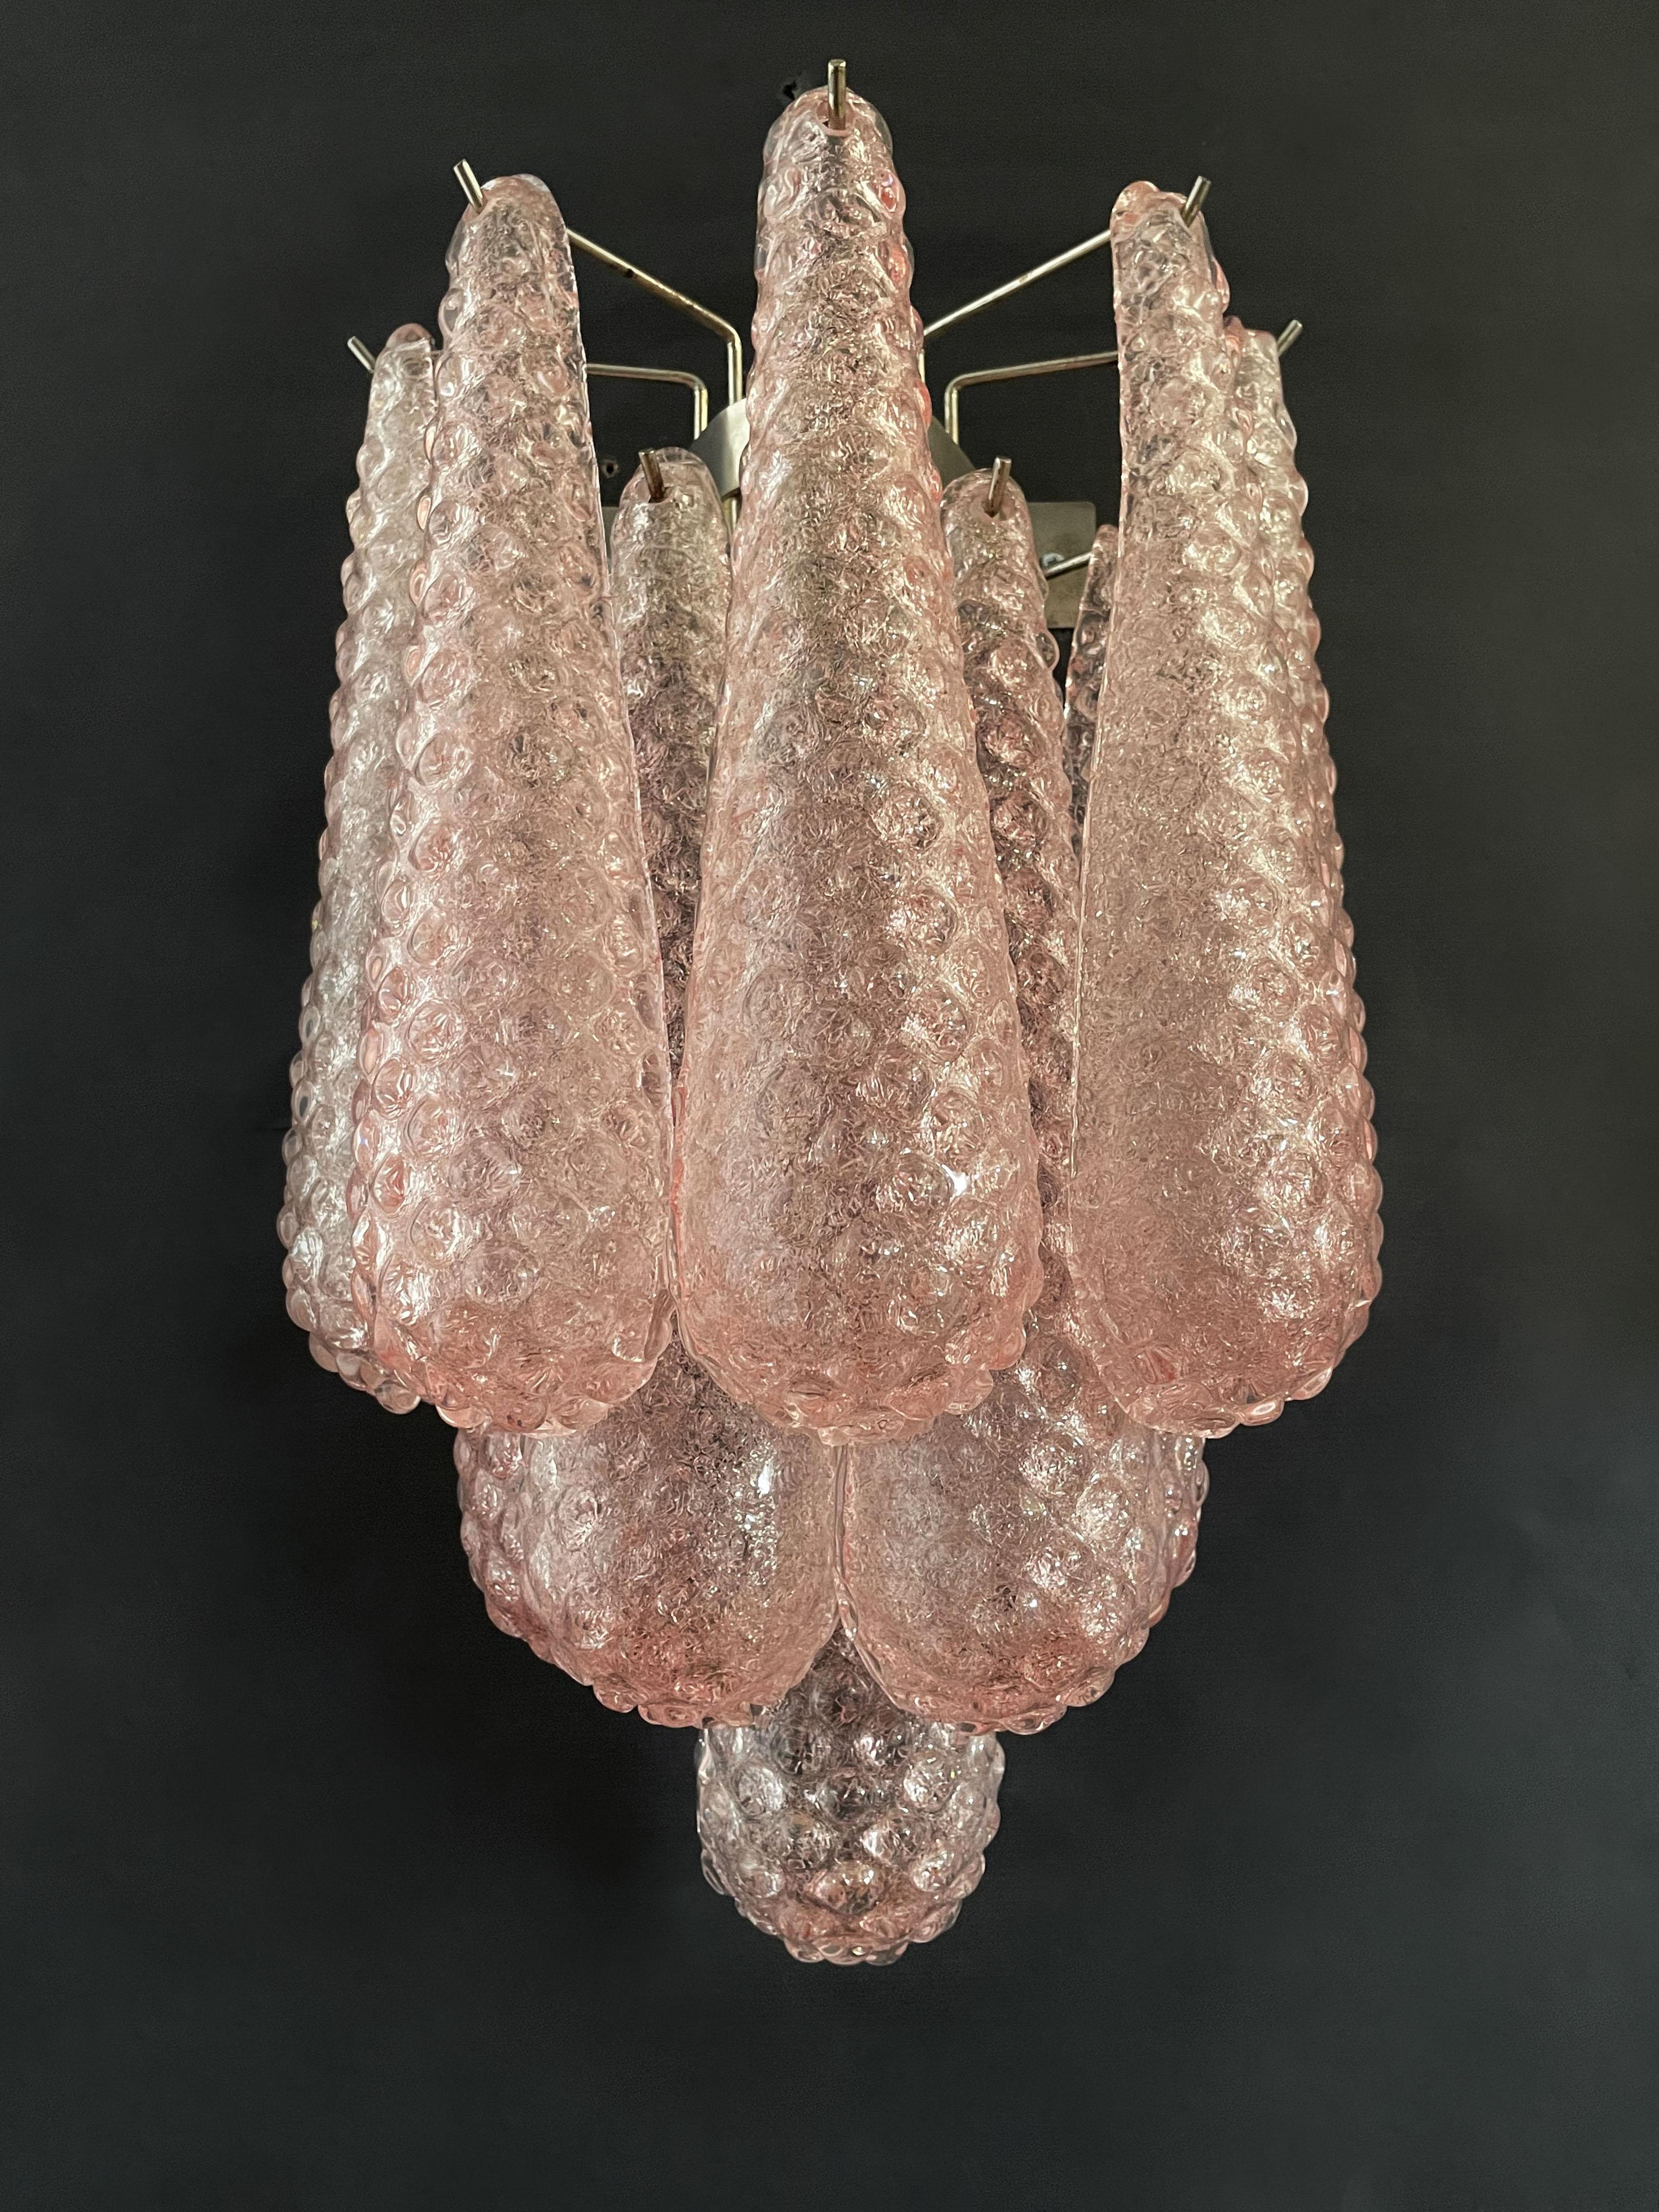 Fantastisches Paar von Vintage Murano Wandleuchte von 10 rosa Glasblüten (transparentem Kristall, glatt außen, mit Kristallpulver und dann rau innen) in einem Chromrahmen gemacht.
Zeitraum: Ende des XX. Jahrhunderts
Abmessungen: 17,70 Zoll Höhe (45